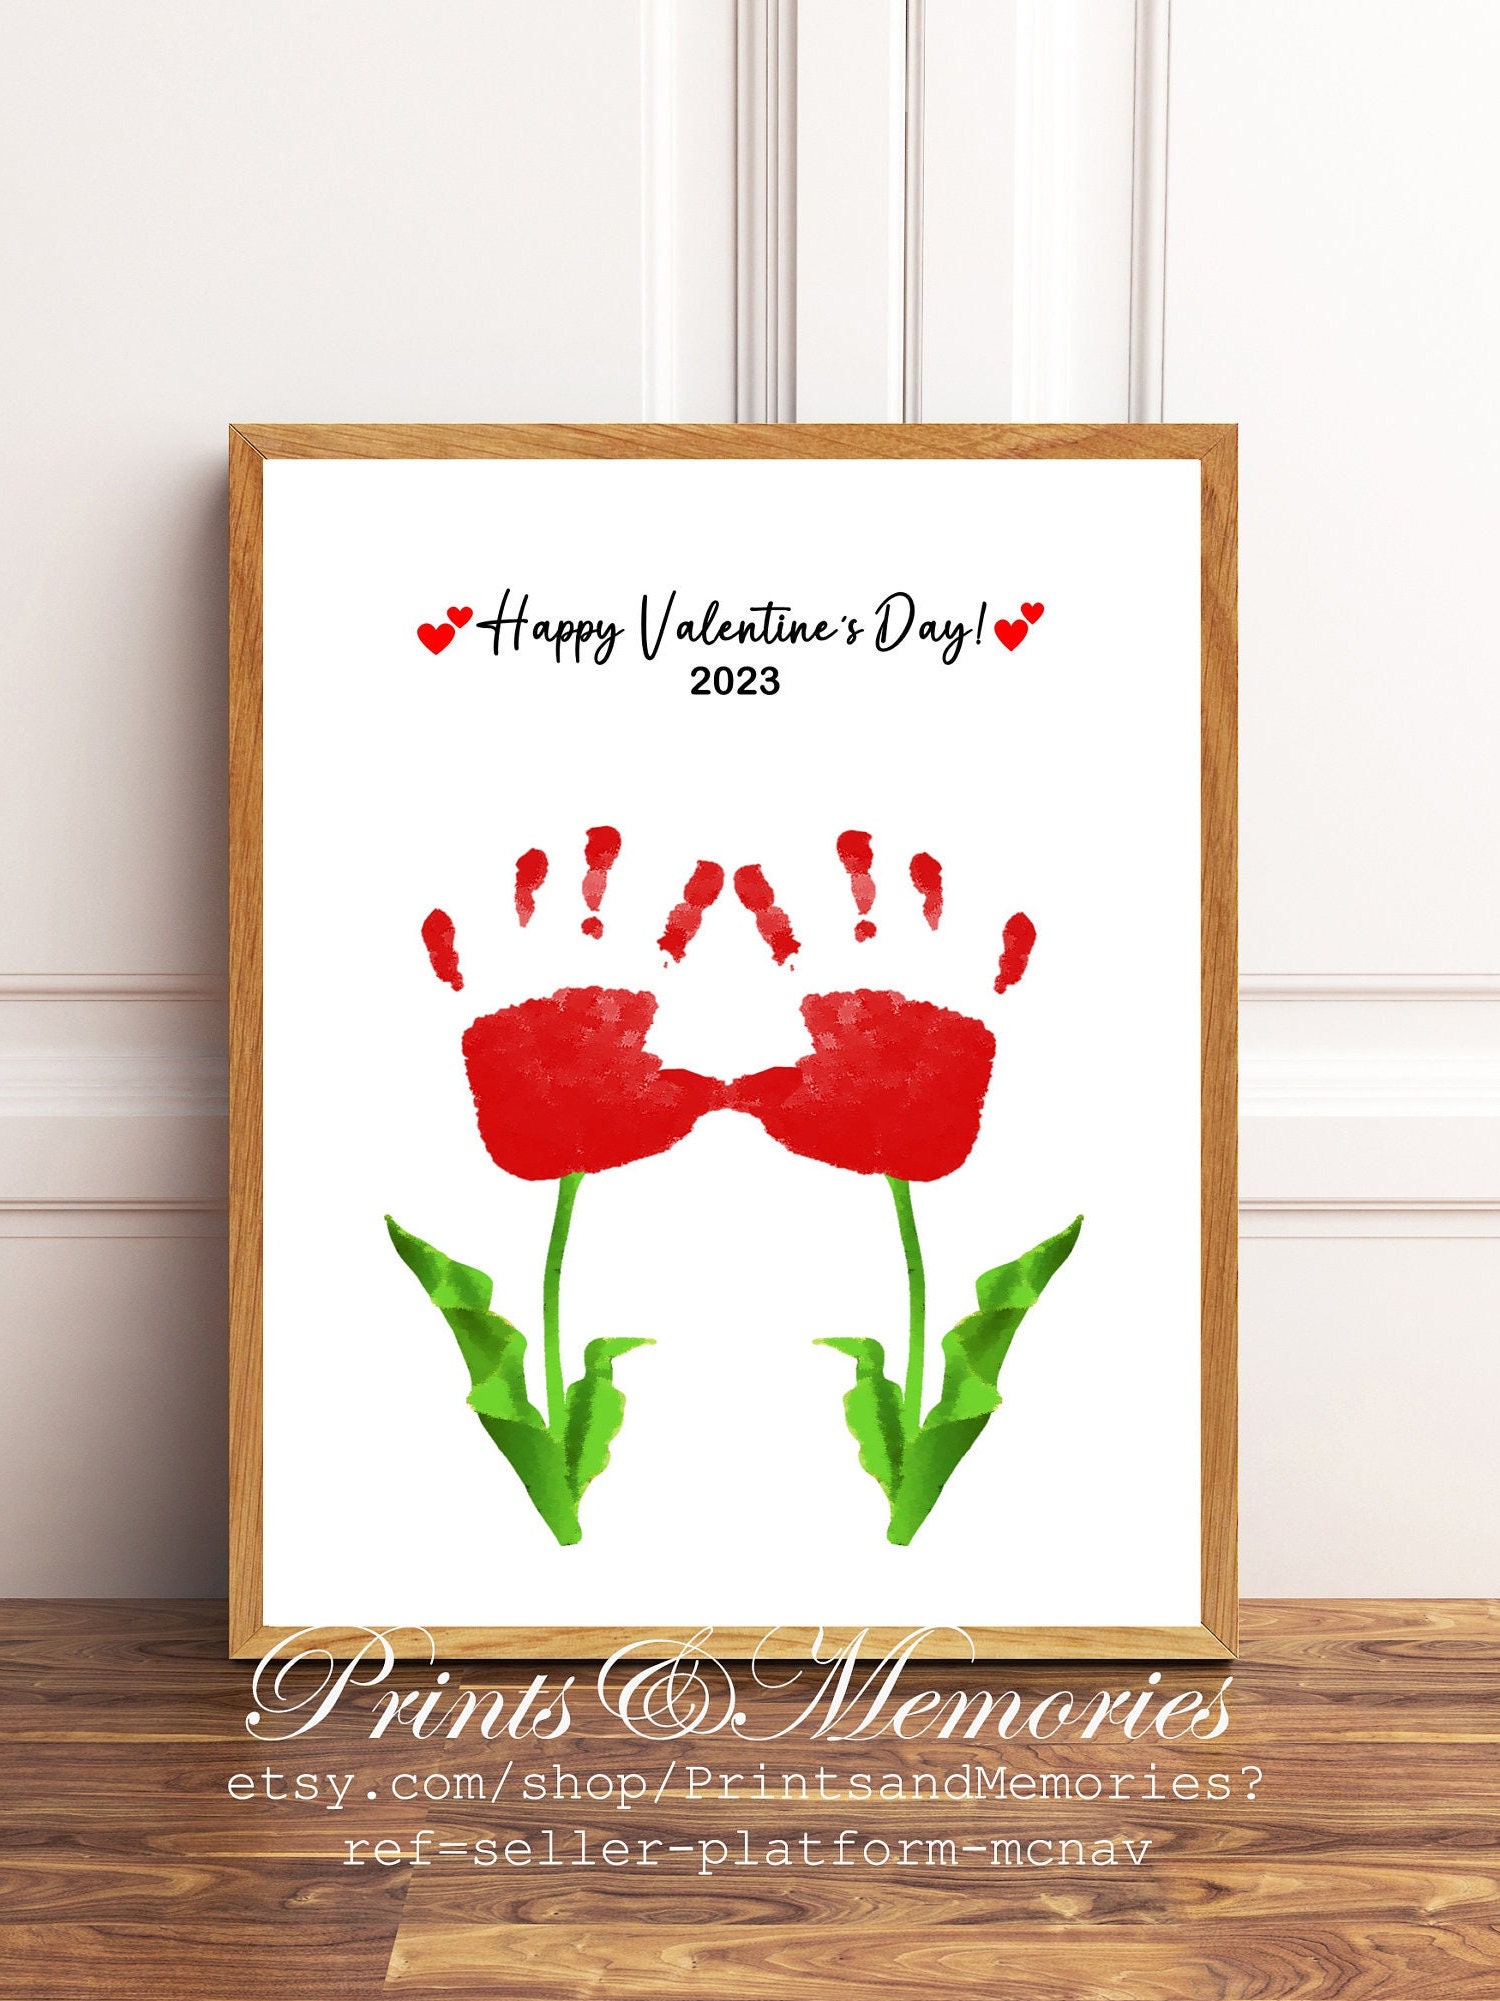 12 Best Valentine's Day Handprint Crafts - Valentine Finger Paint